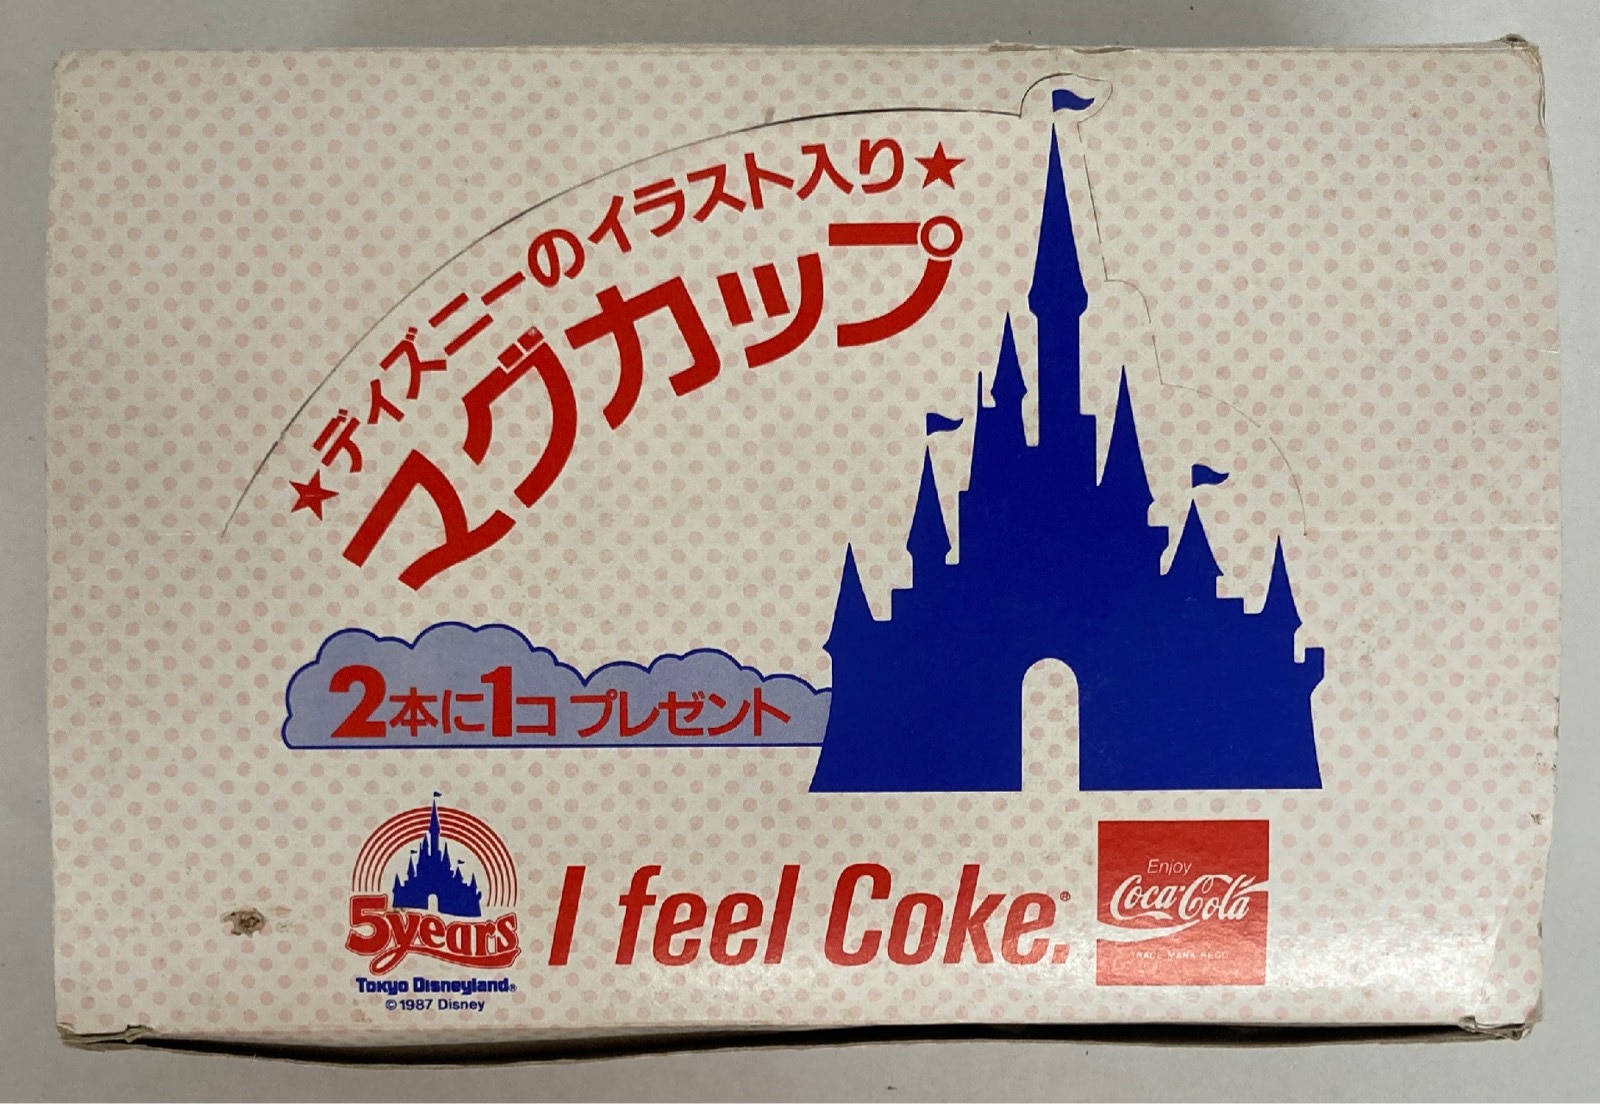 コカ コーラ Disney マグカップ I Feel Coke Tokyo Disneyland 5years 1box 6個 ディズニー のイラスト入りマグカップ 5周年 まんだらけ Mandarake